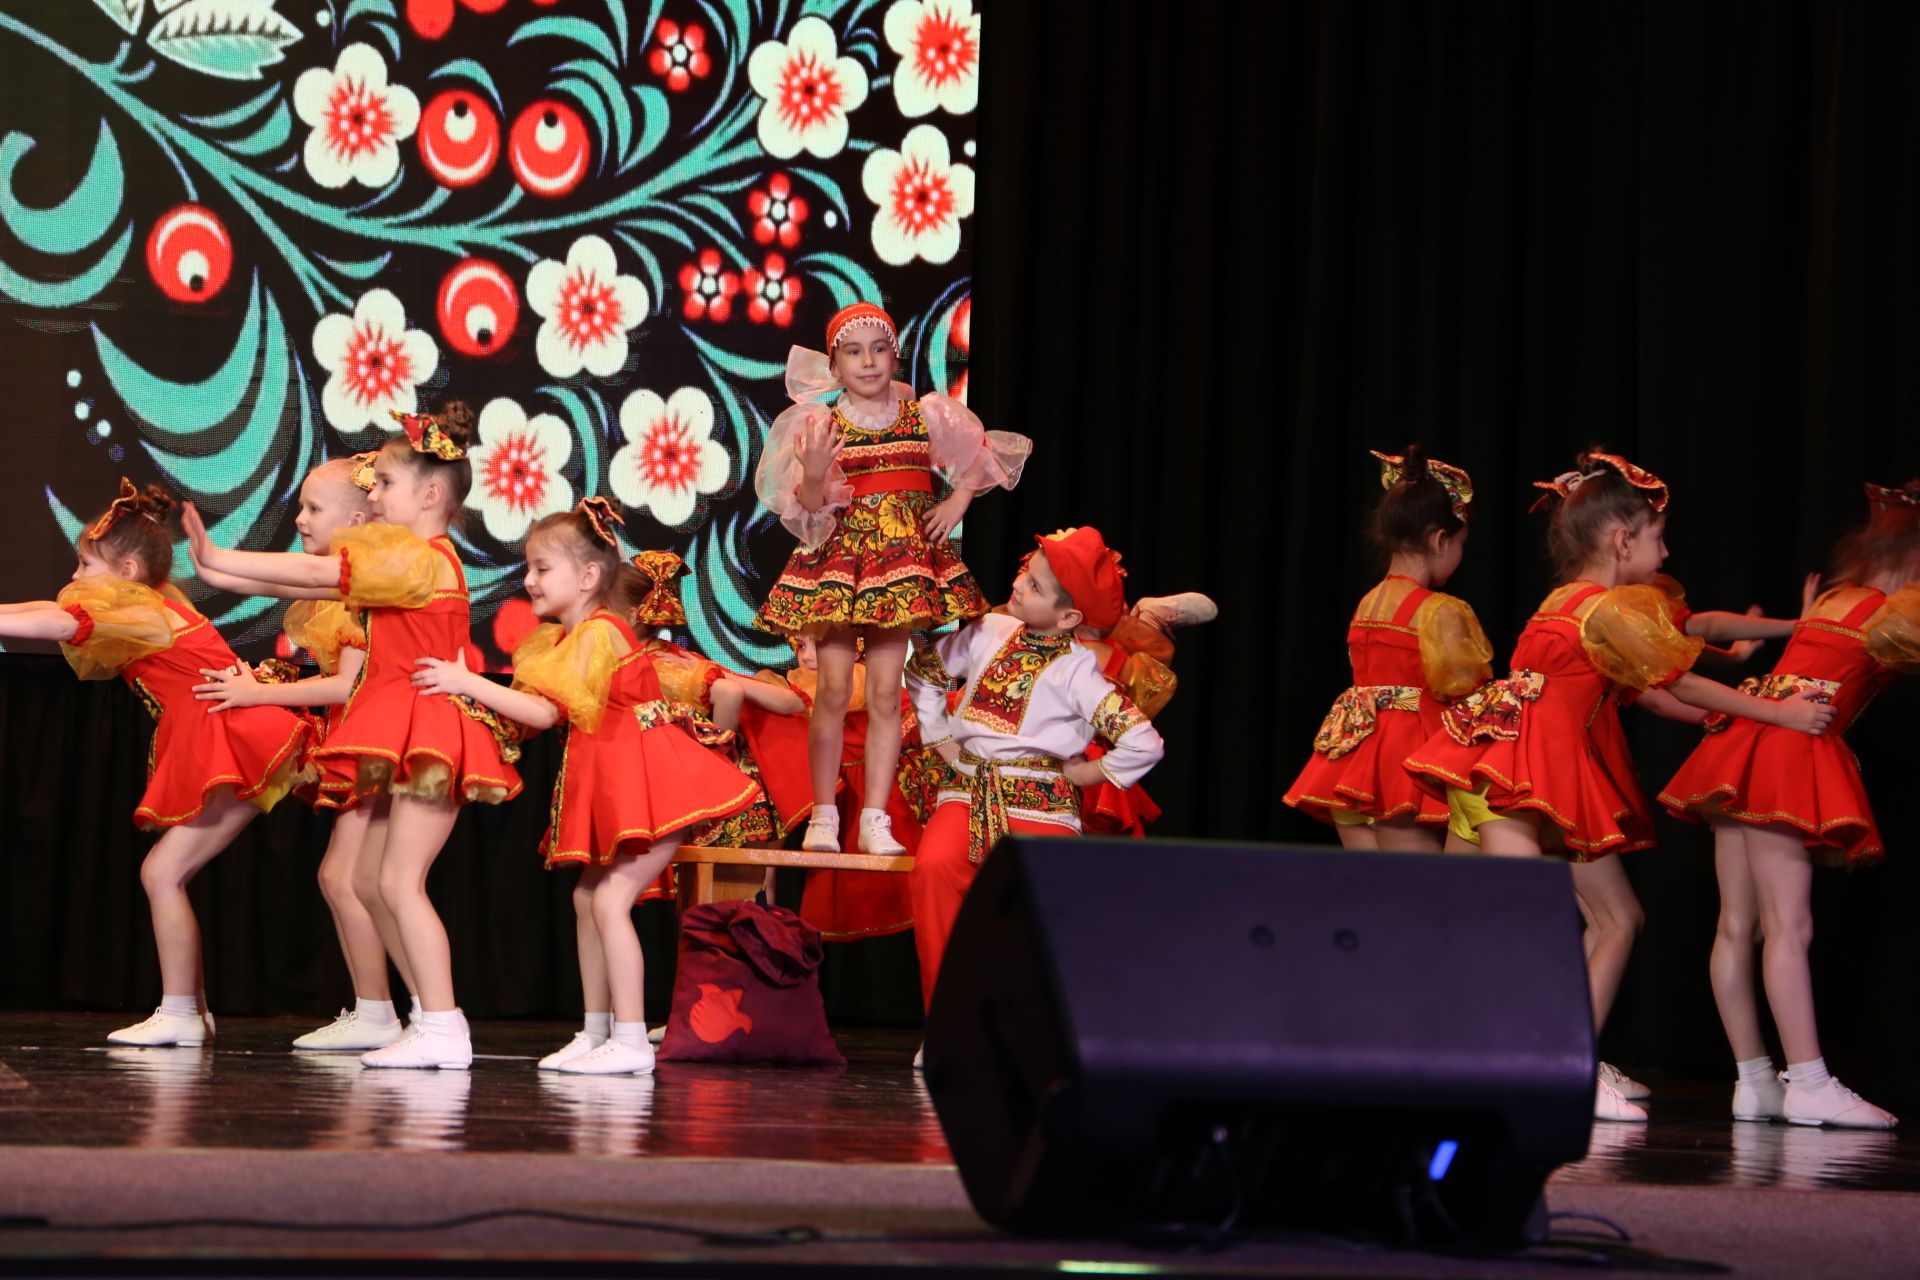 «Милым и любимым»: в Алексеевском прошел концерт посвященный Международному женскому дню